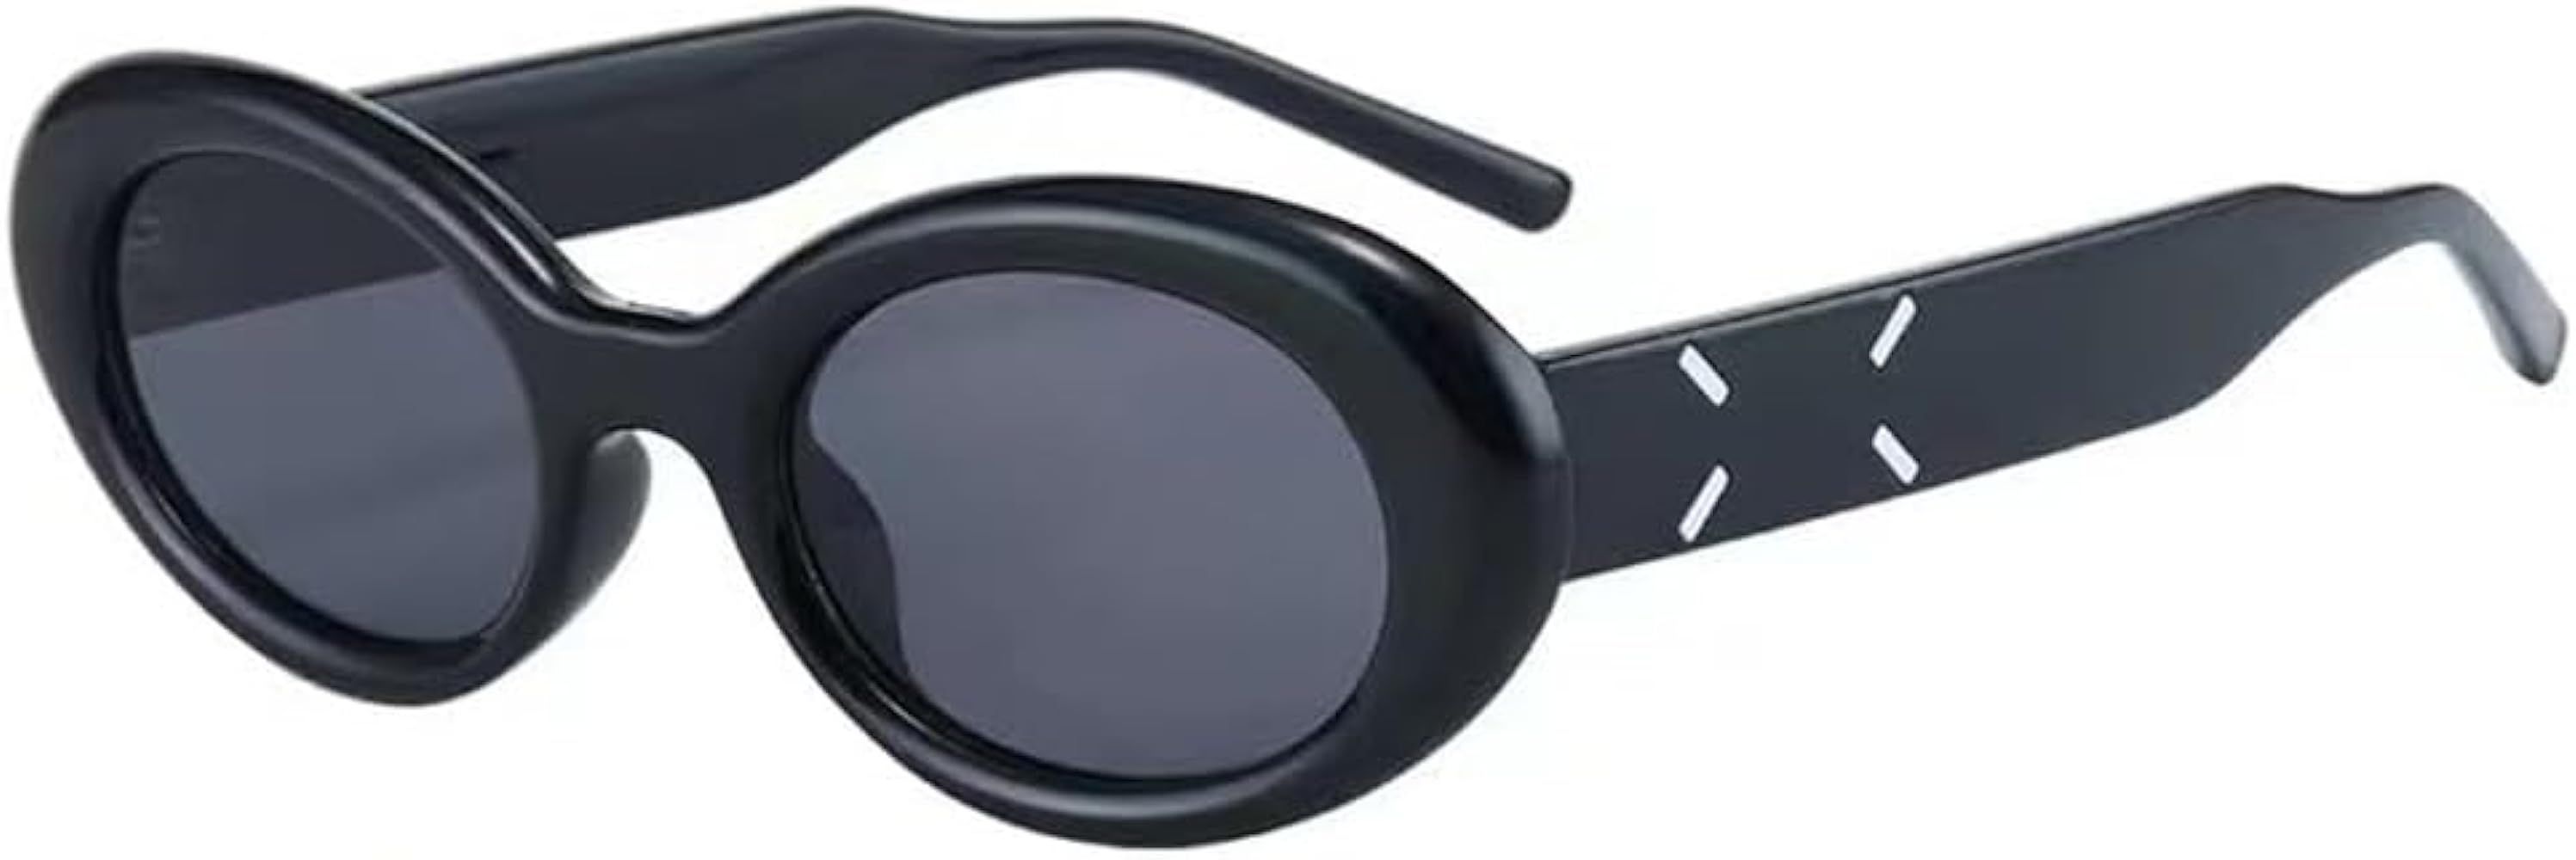 Unisex Oversized Thick Sunglasses, Oval Y2K Glasses Frame Eyewear Shield Sun Glasses Aesthetic Sh... | Amazon (US)